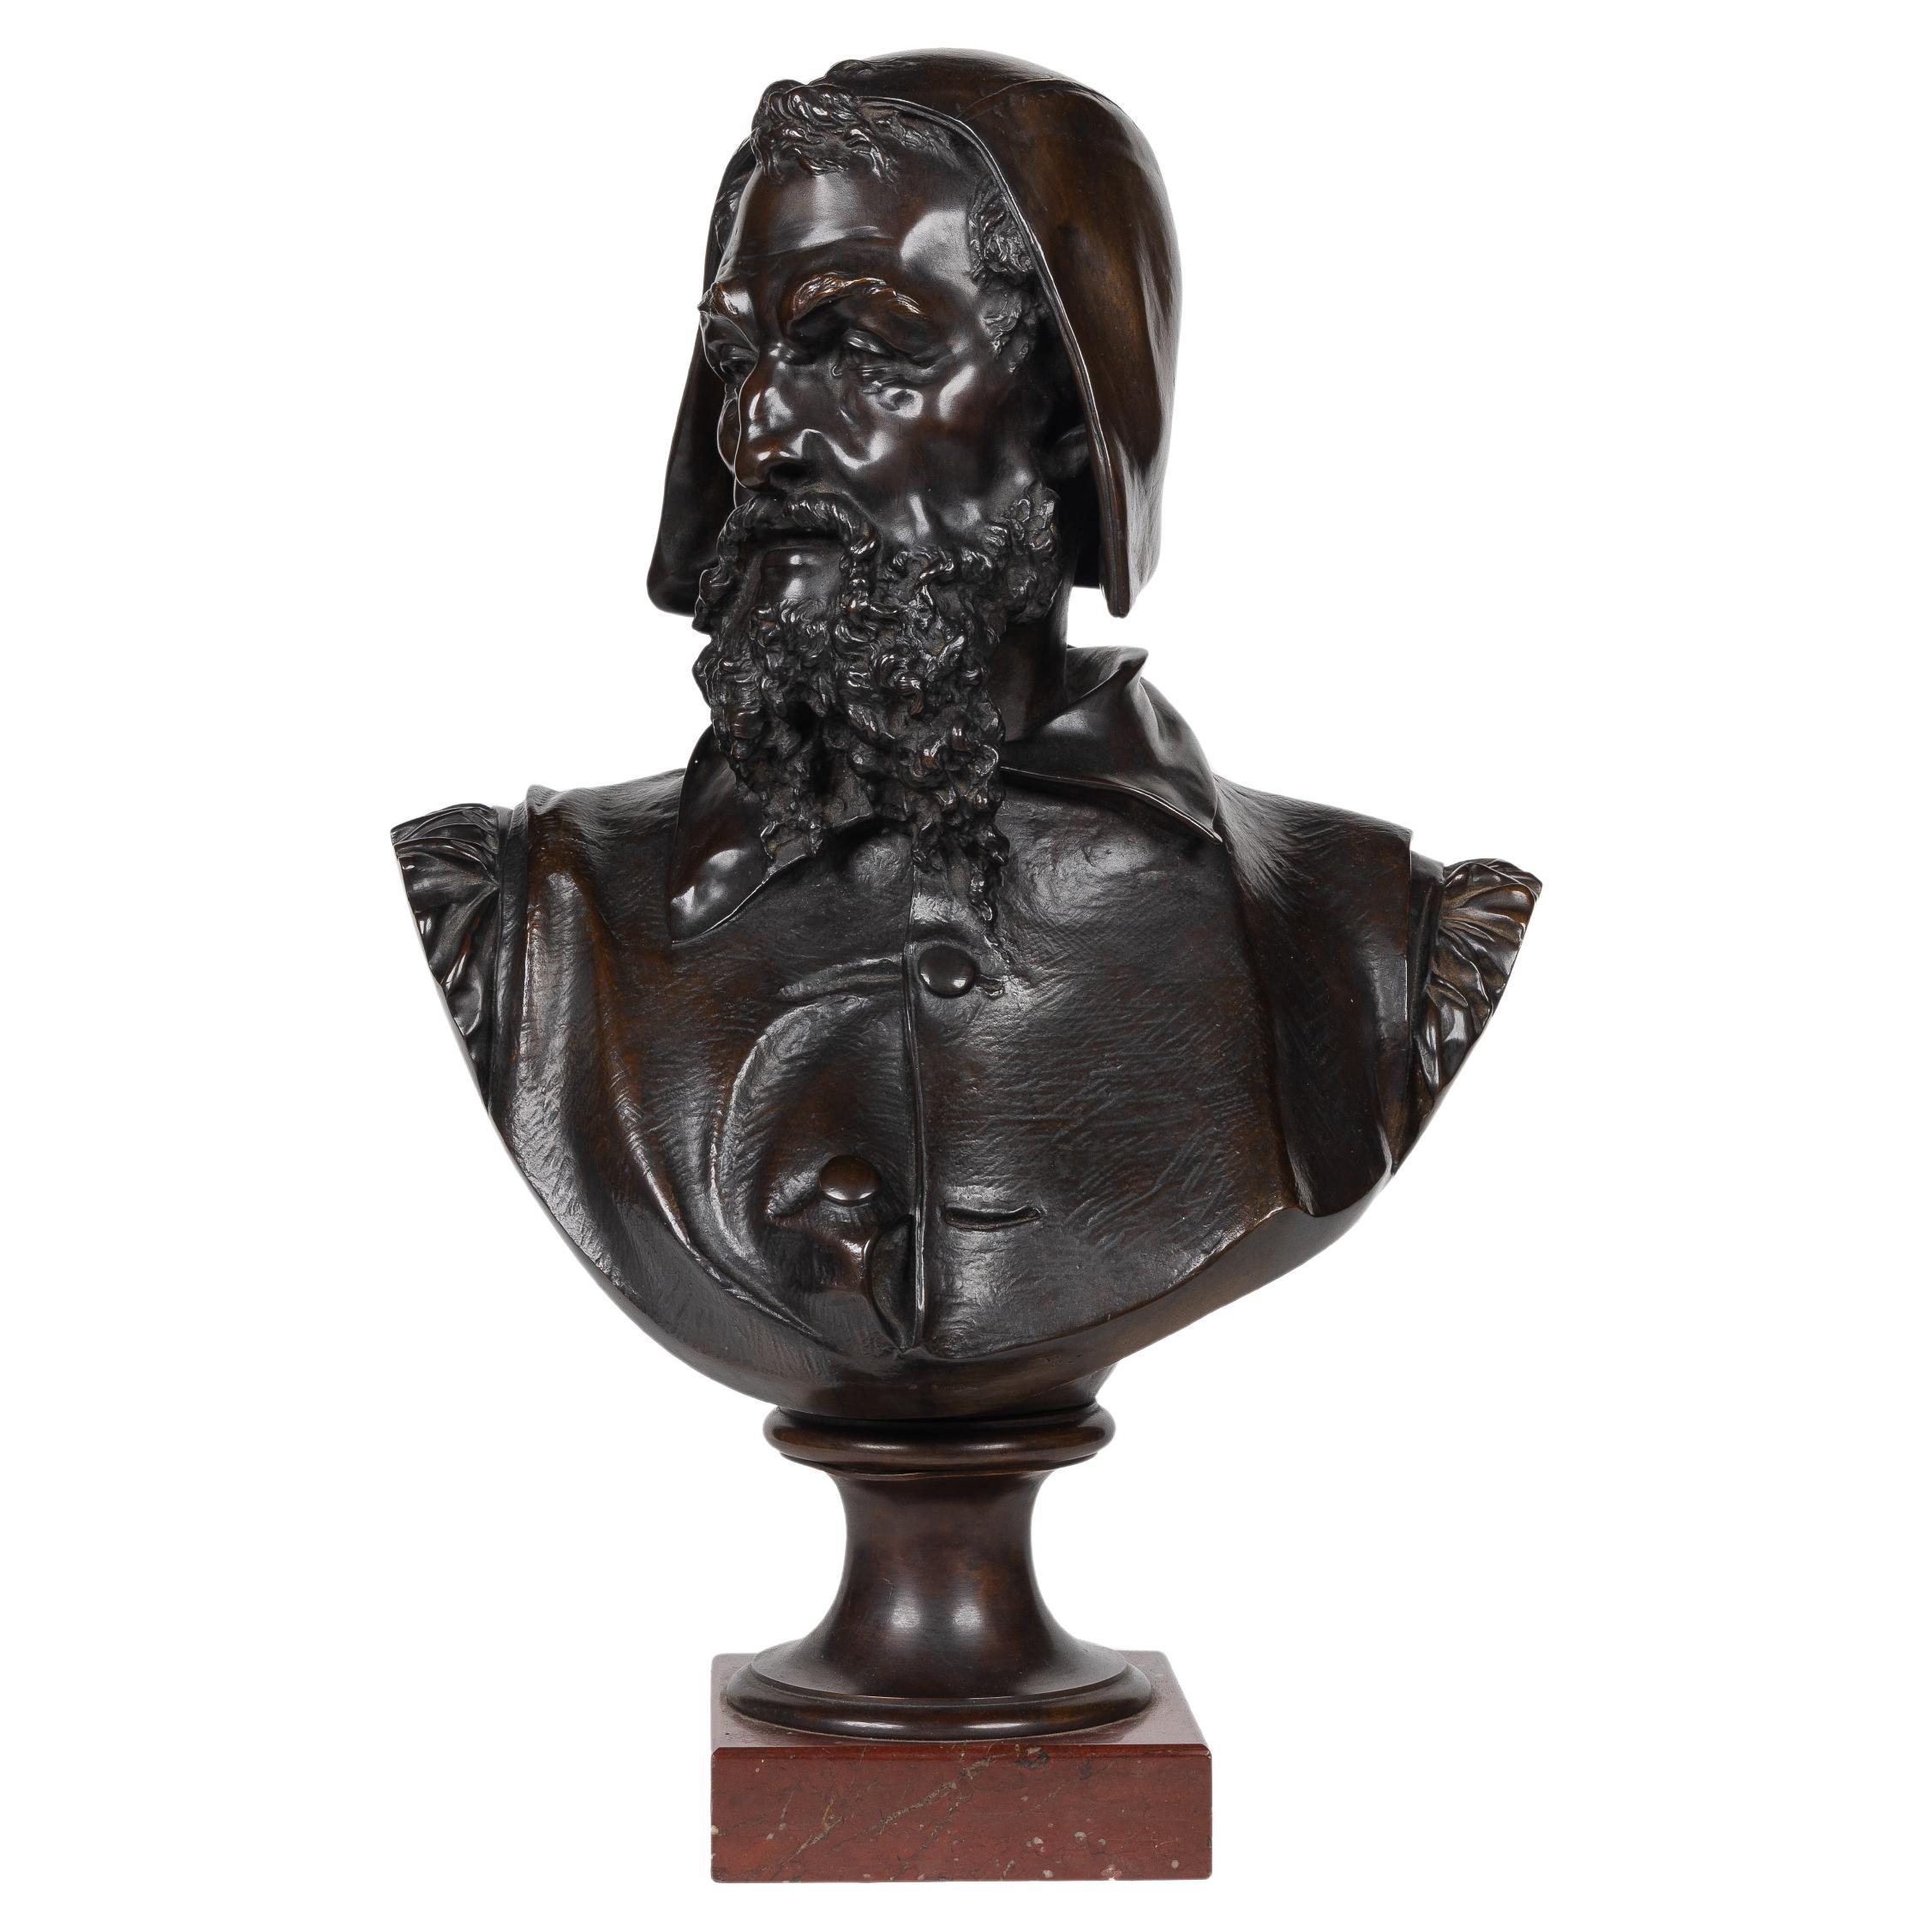 Albert-Ernest Carrier-Belleuse, eine seltene und bedeutende Bronzebüste von Michelangelo